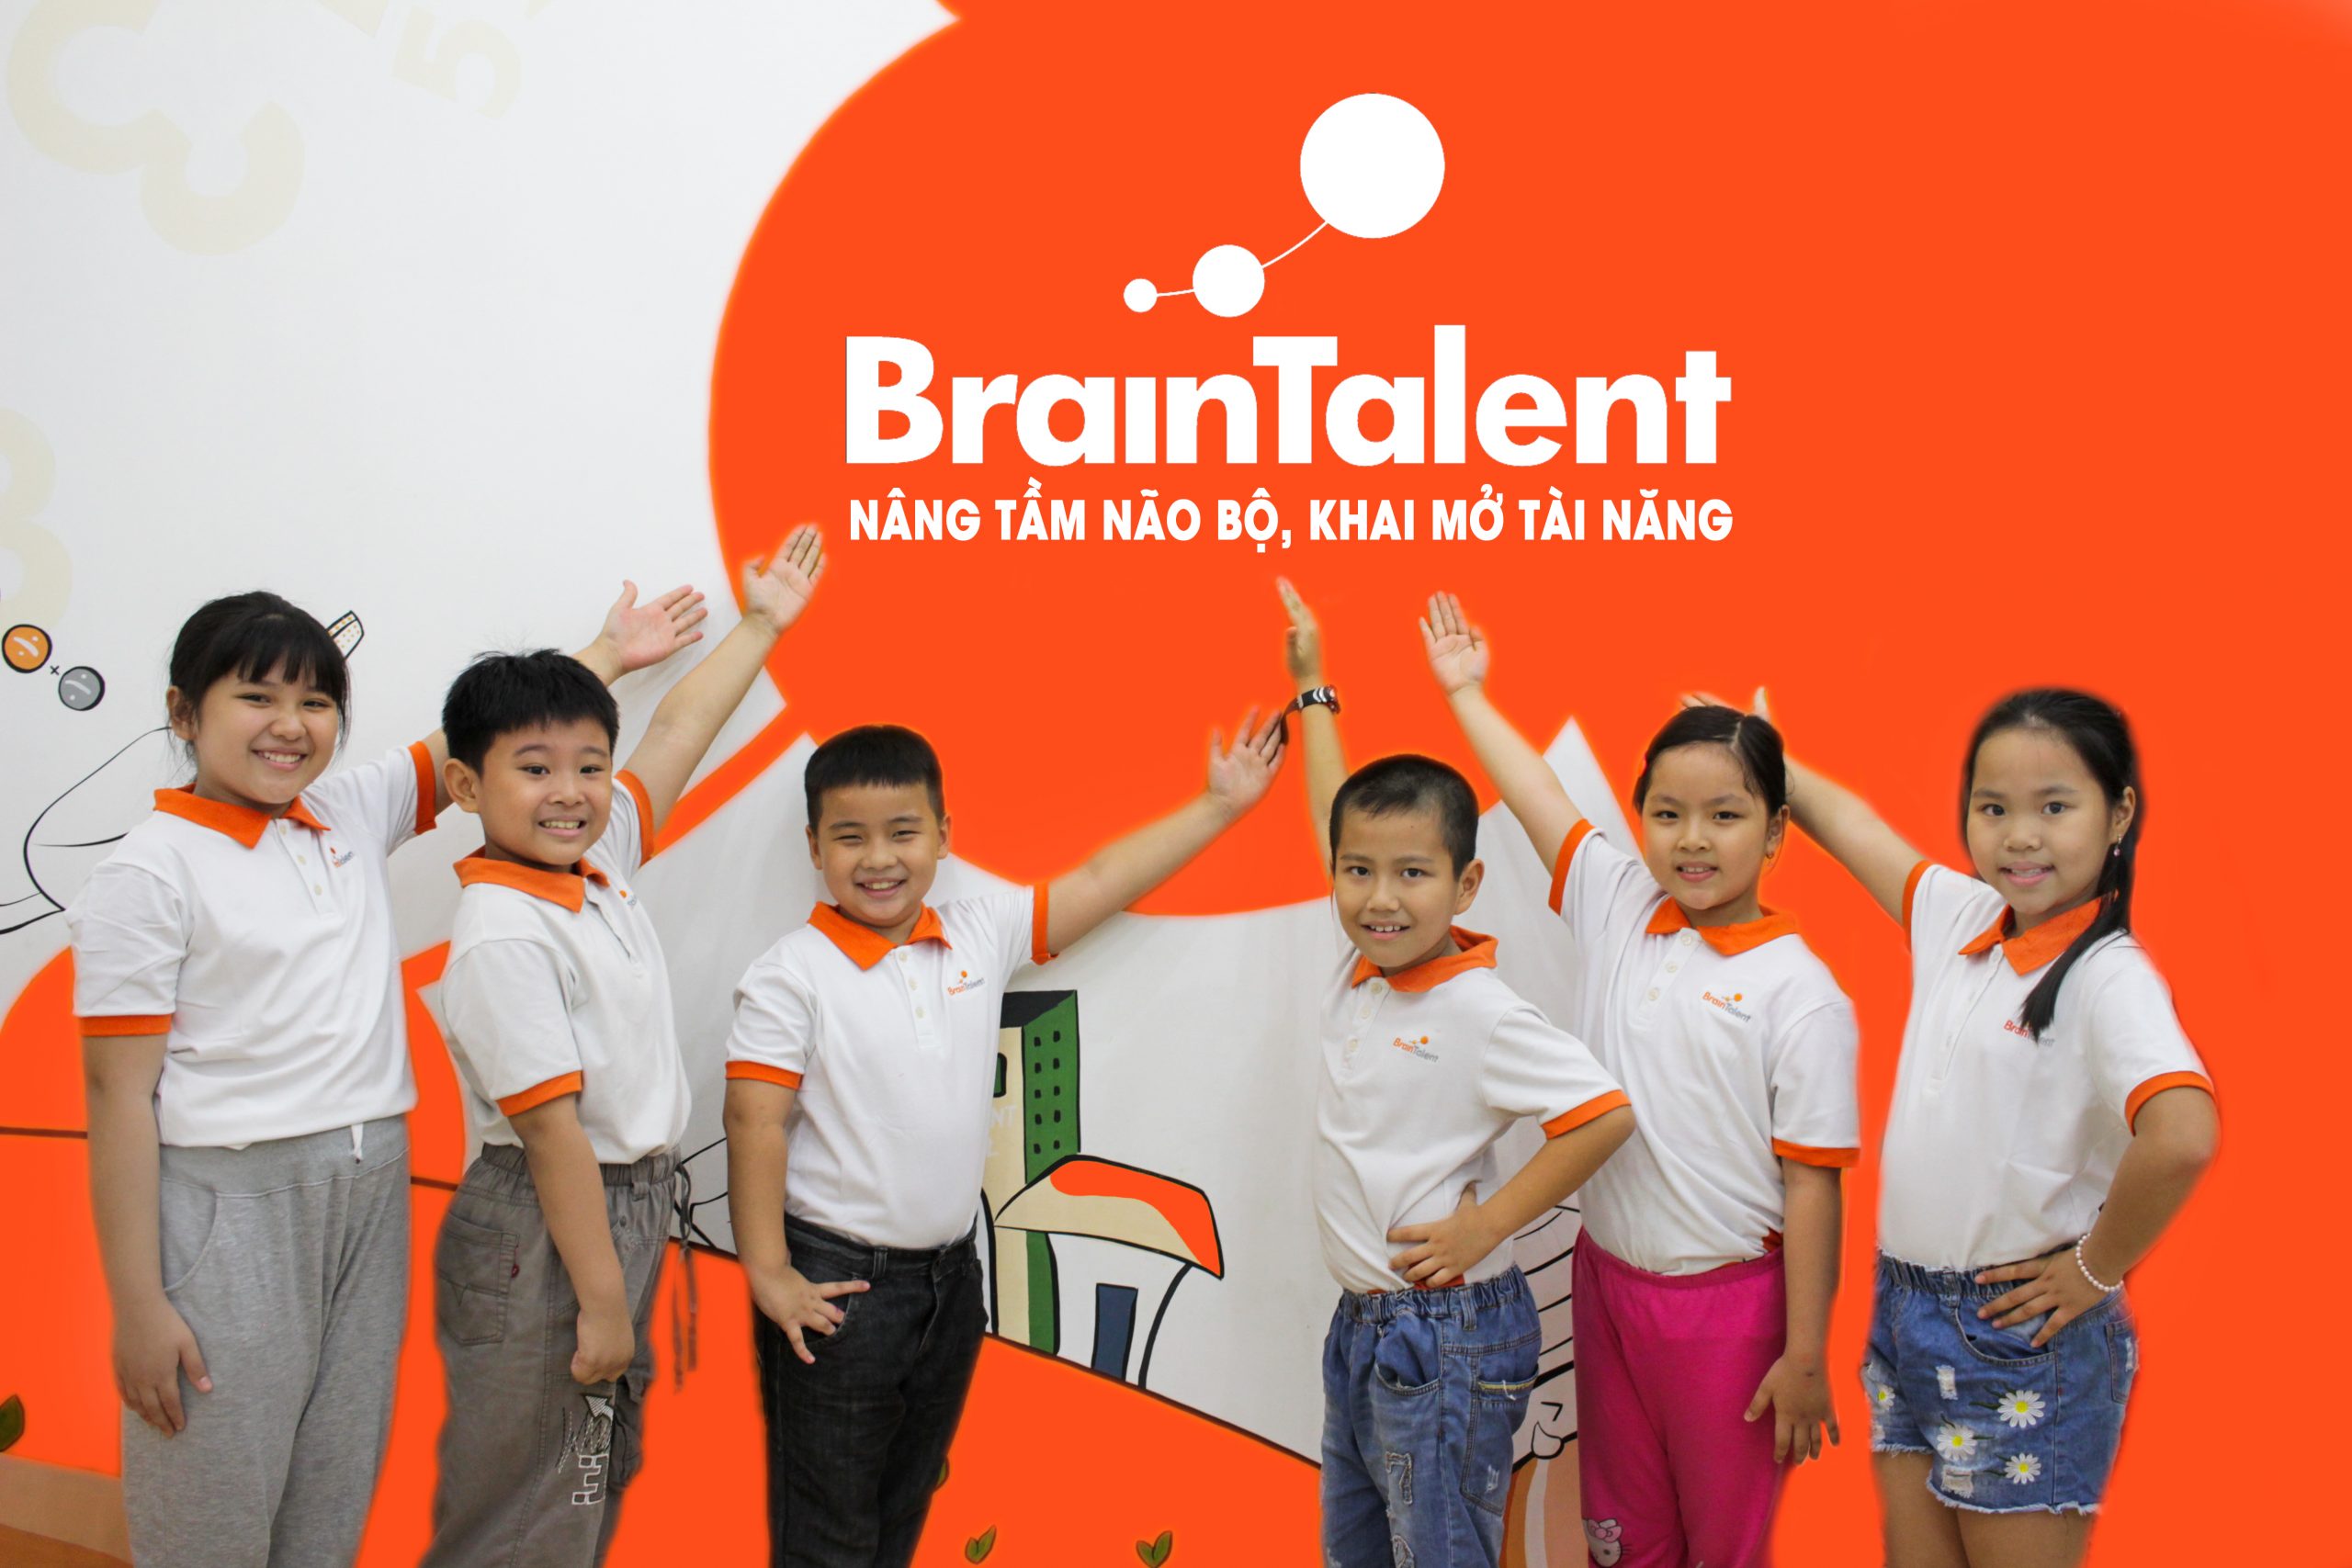 Braintalent - nâng tầm não bộ, khai mở tài năng